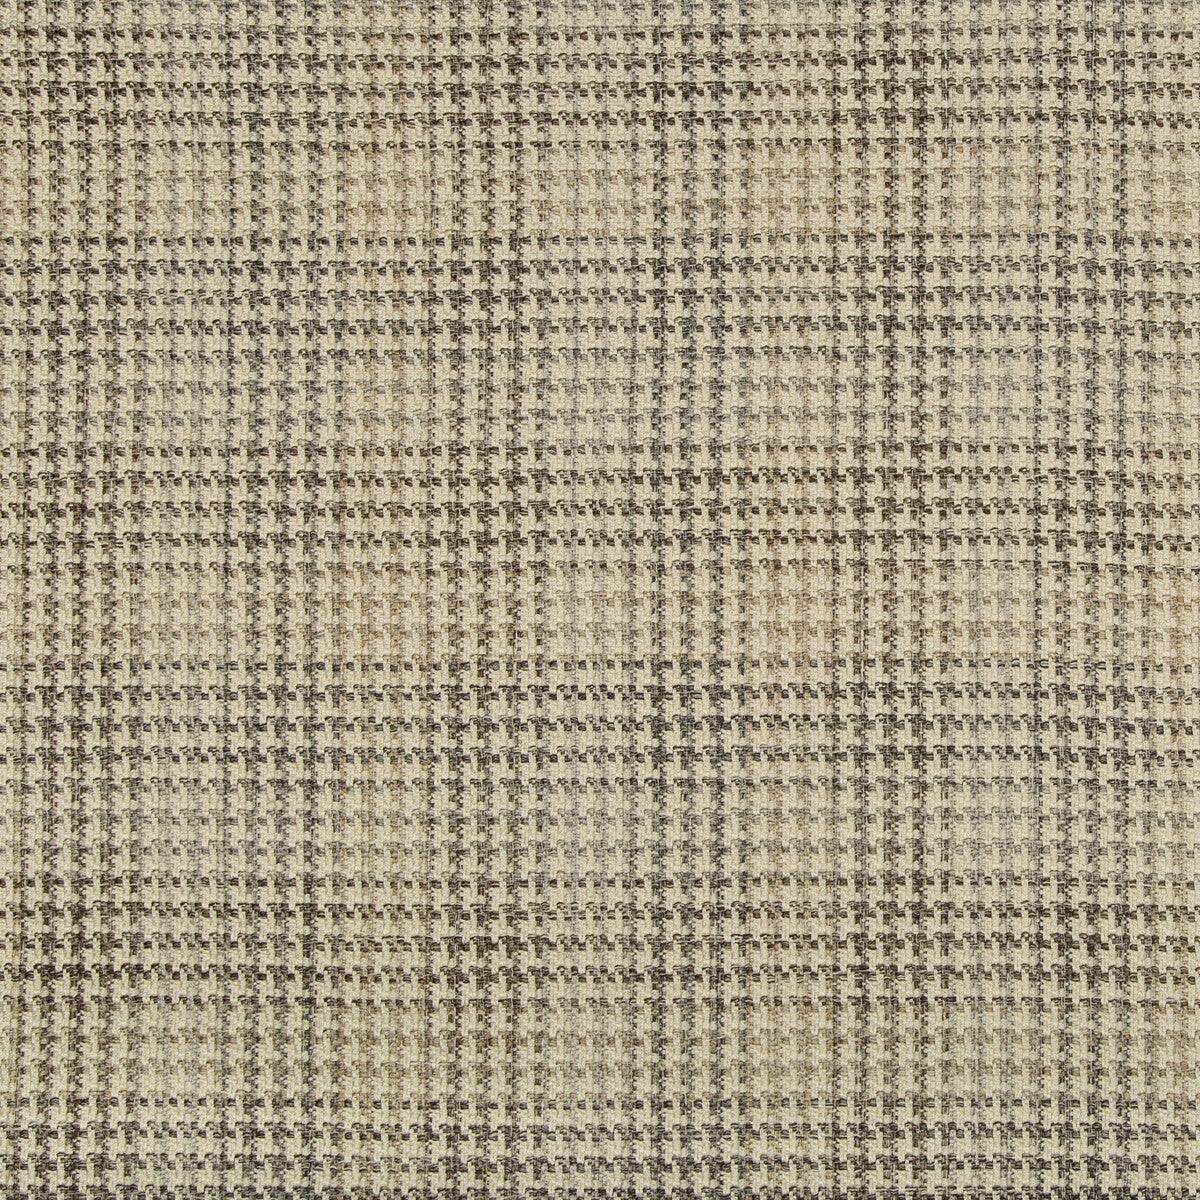 Kravet Design fabric in 35593-6 color - pattern 35593.6.0 - by Kravet Design